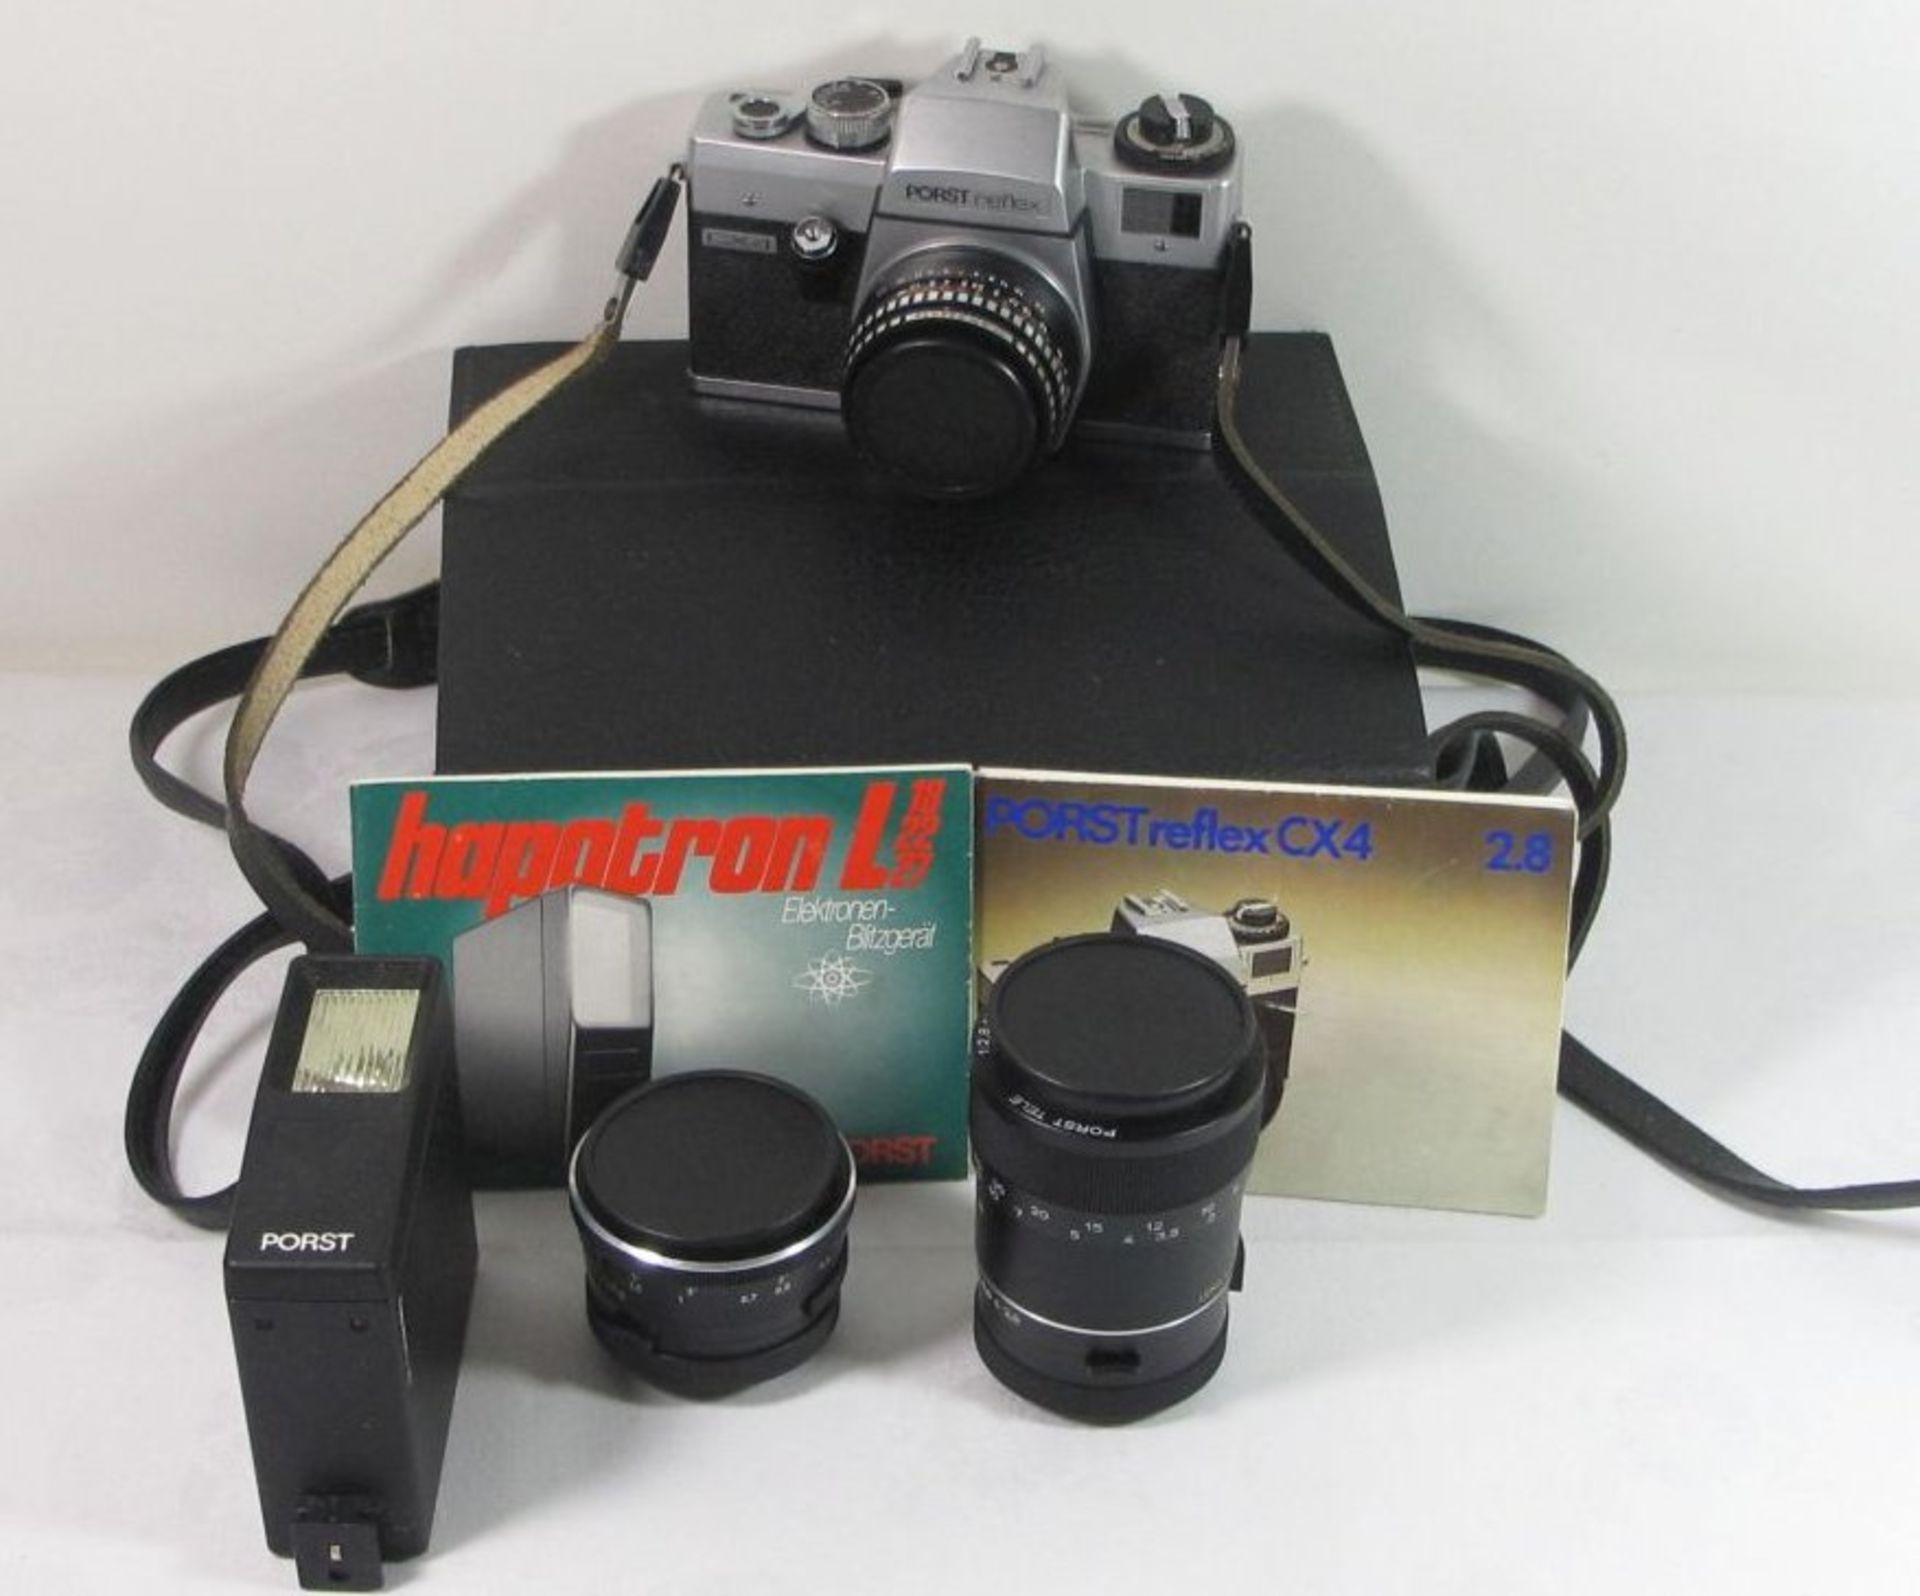 Fotoapparat "Porst Reflex CX 4" anbei 2 Objektive und Blitz, in Tasche. Funktion nicht geprüf